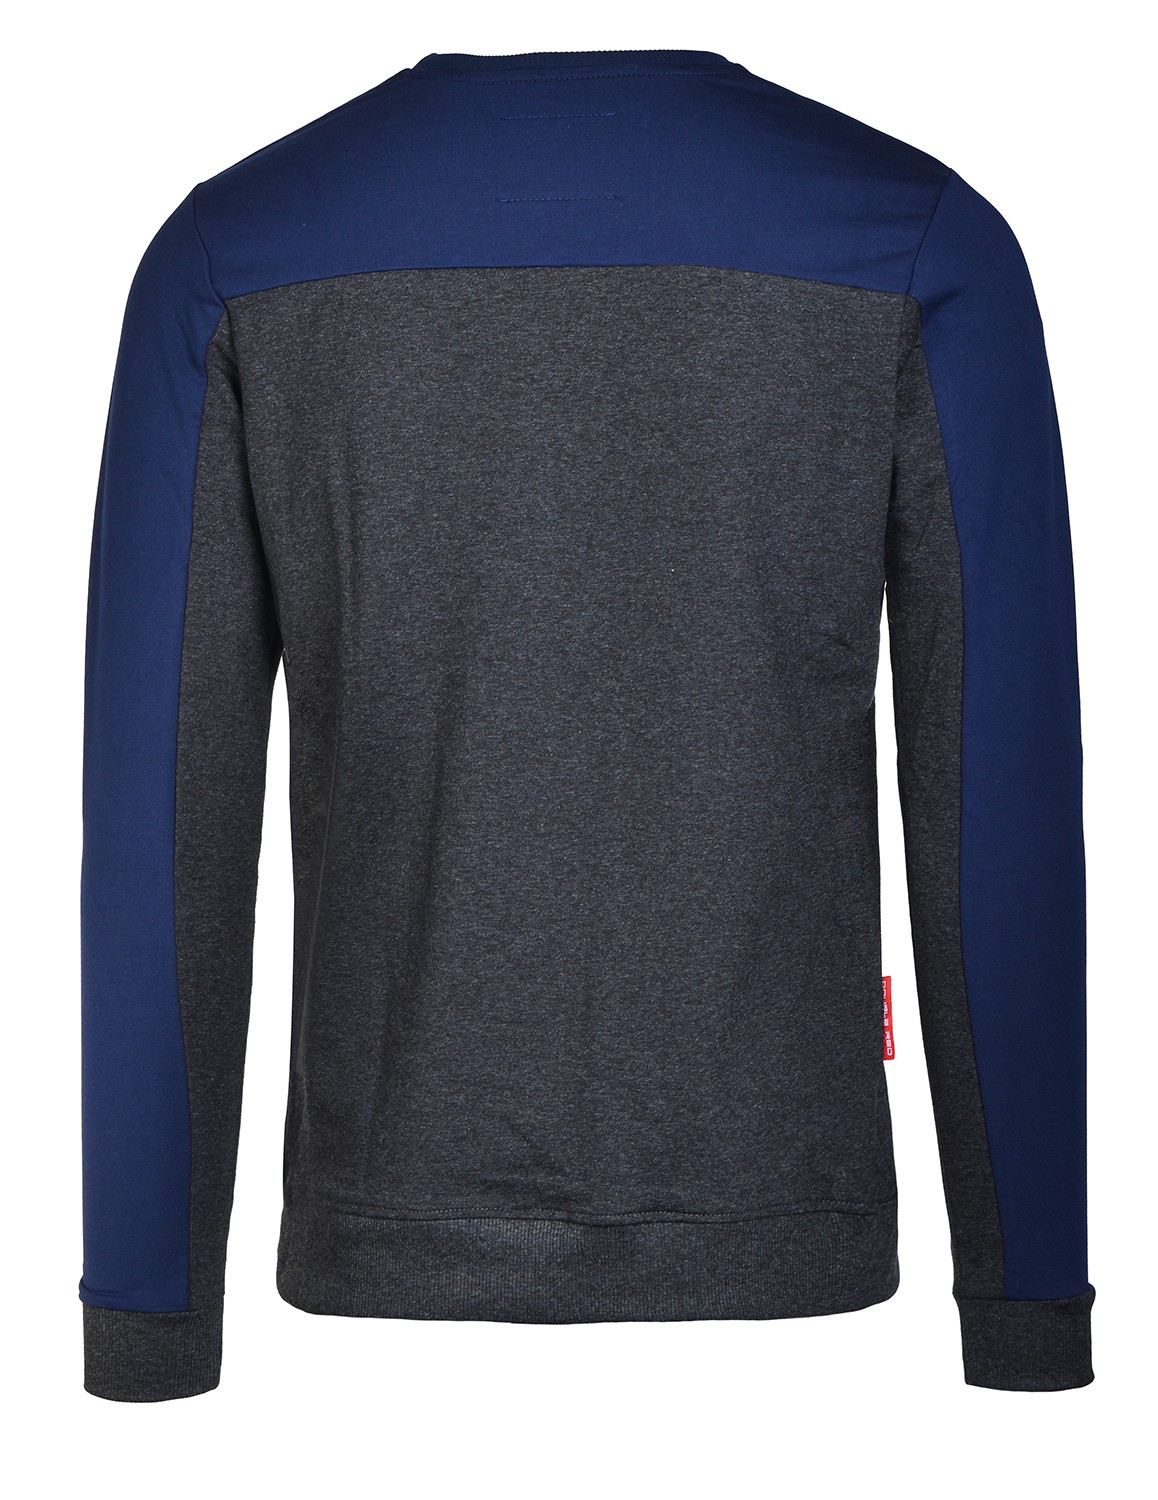 Sweatshirt UTTER Black/Blue